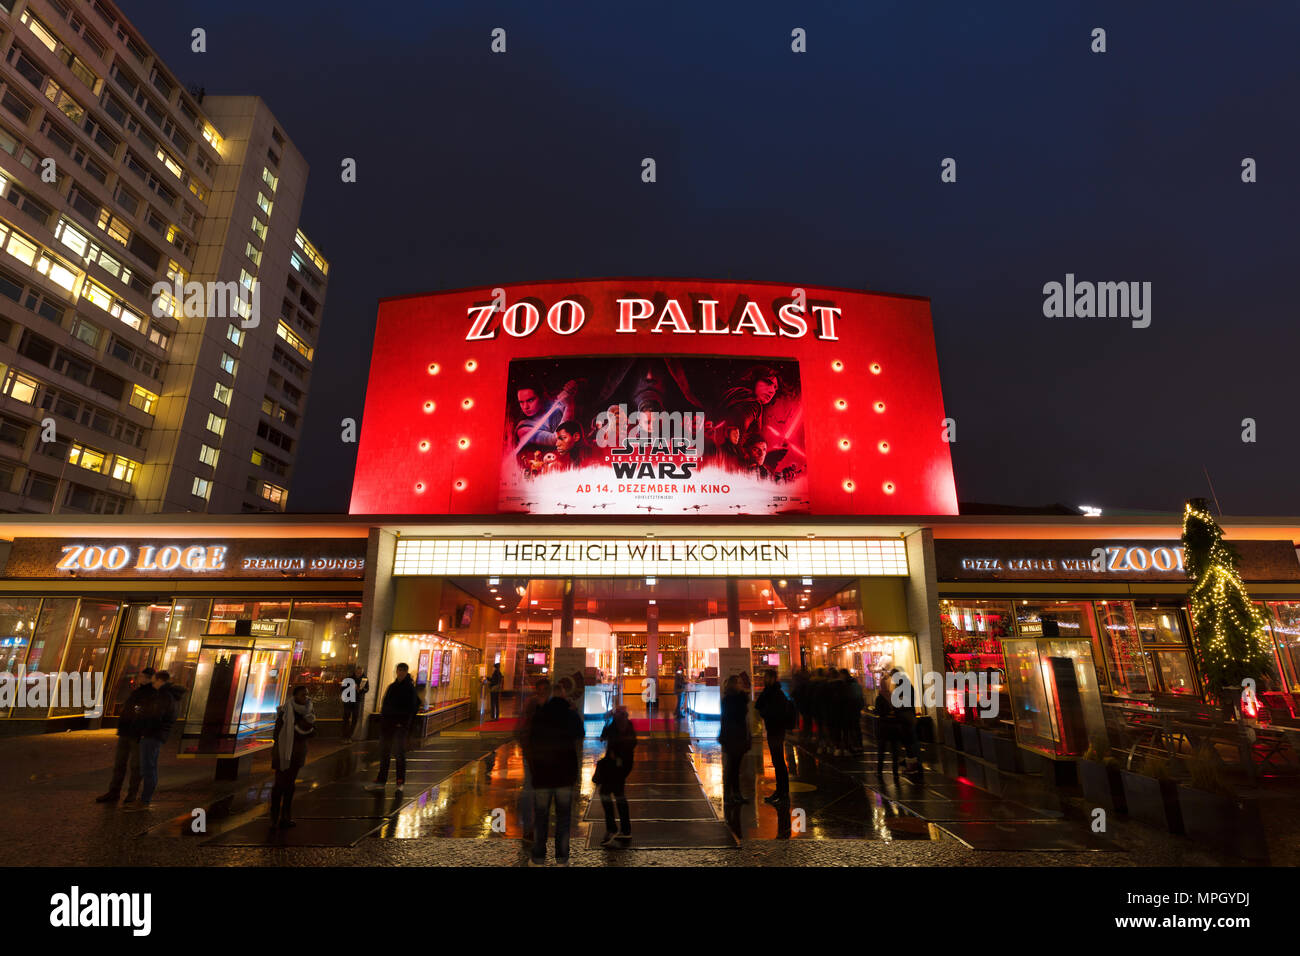 Historischen 'Zoo Palast' Kino in Berlin bei Nacht. In den späten 50er Jahren gebaut, es bewirtet hatte, die Internationalen Filmfestspiele Berlin (Berlinale) seit Jahrzehnten. Stockfoto